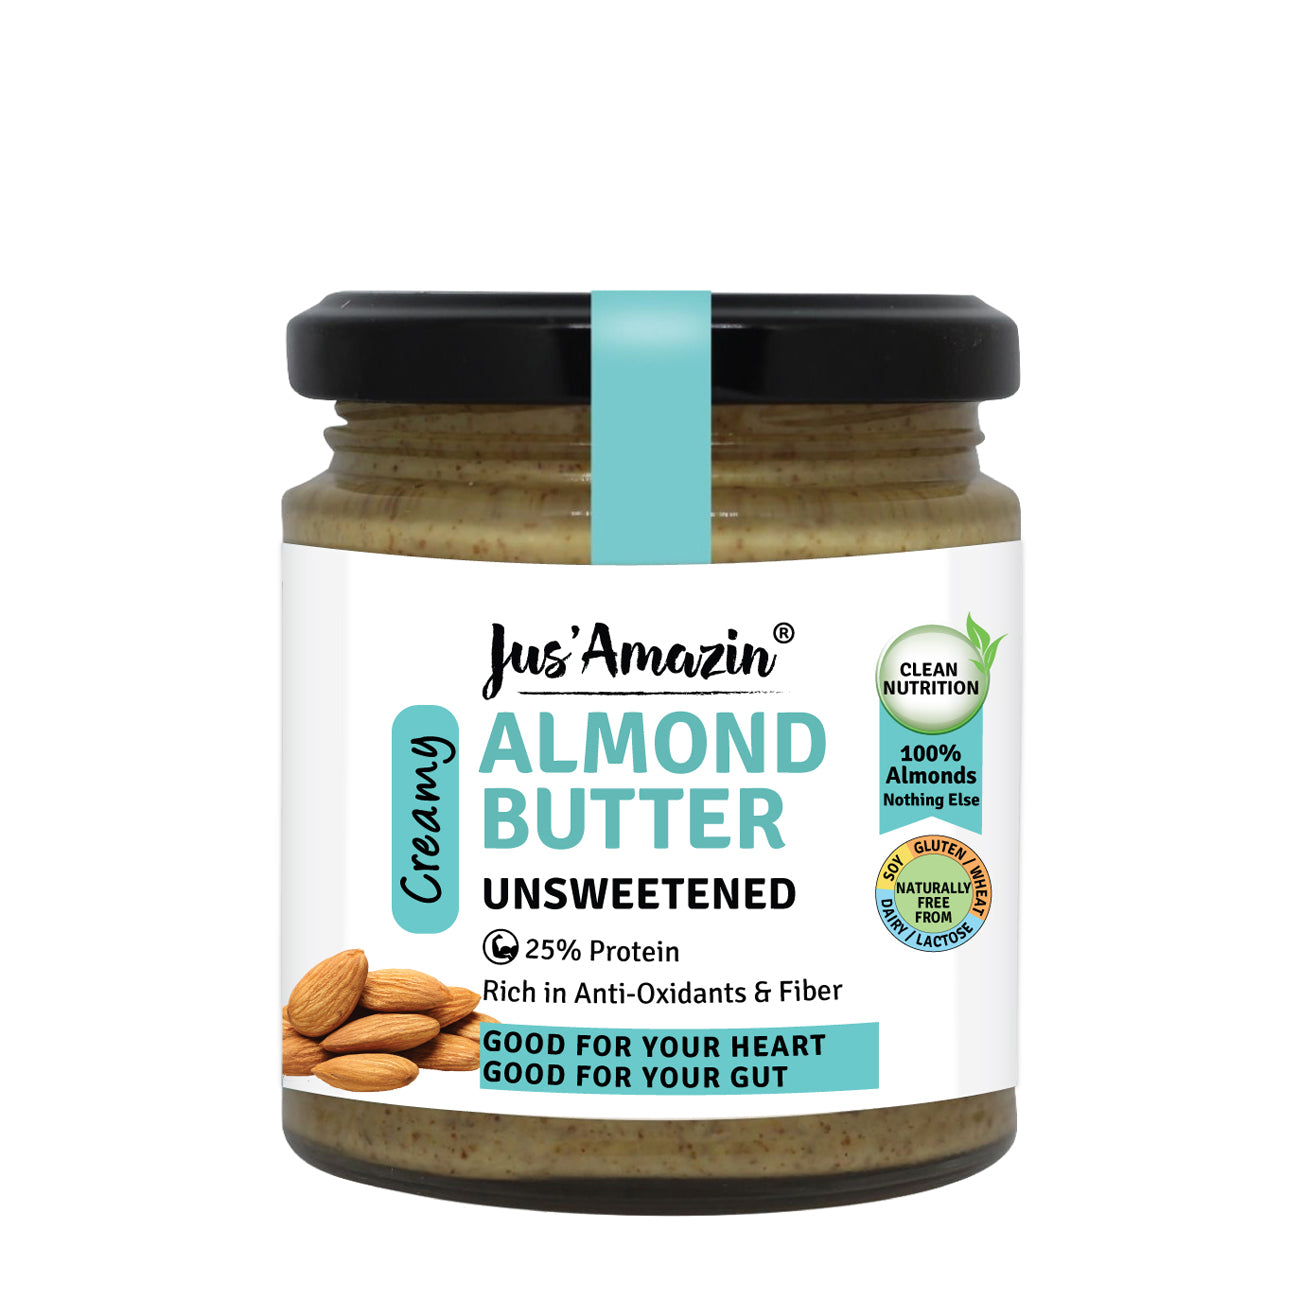 Natural Almond Butter